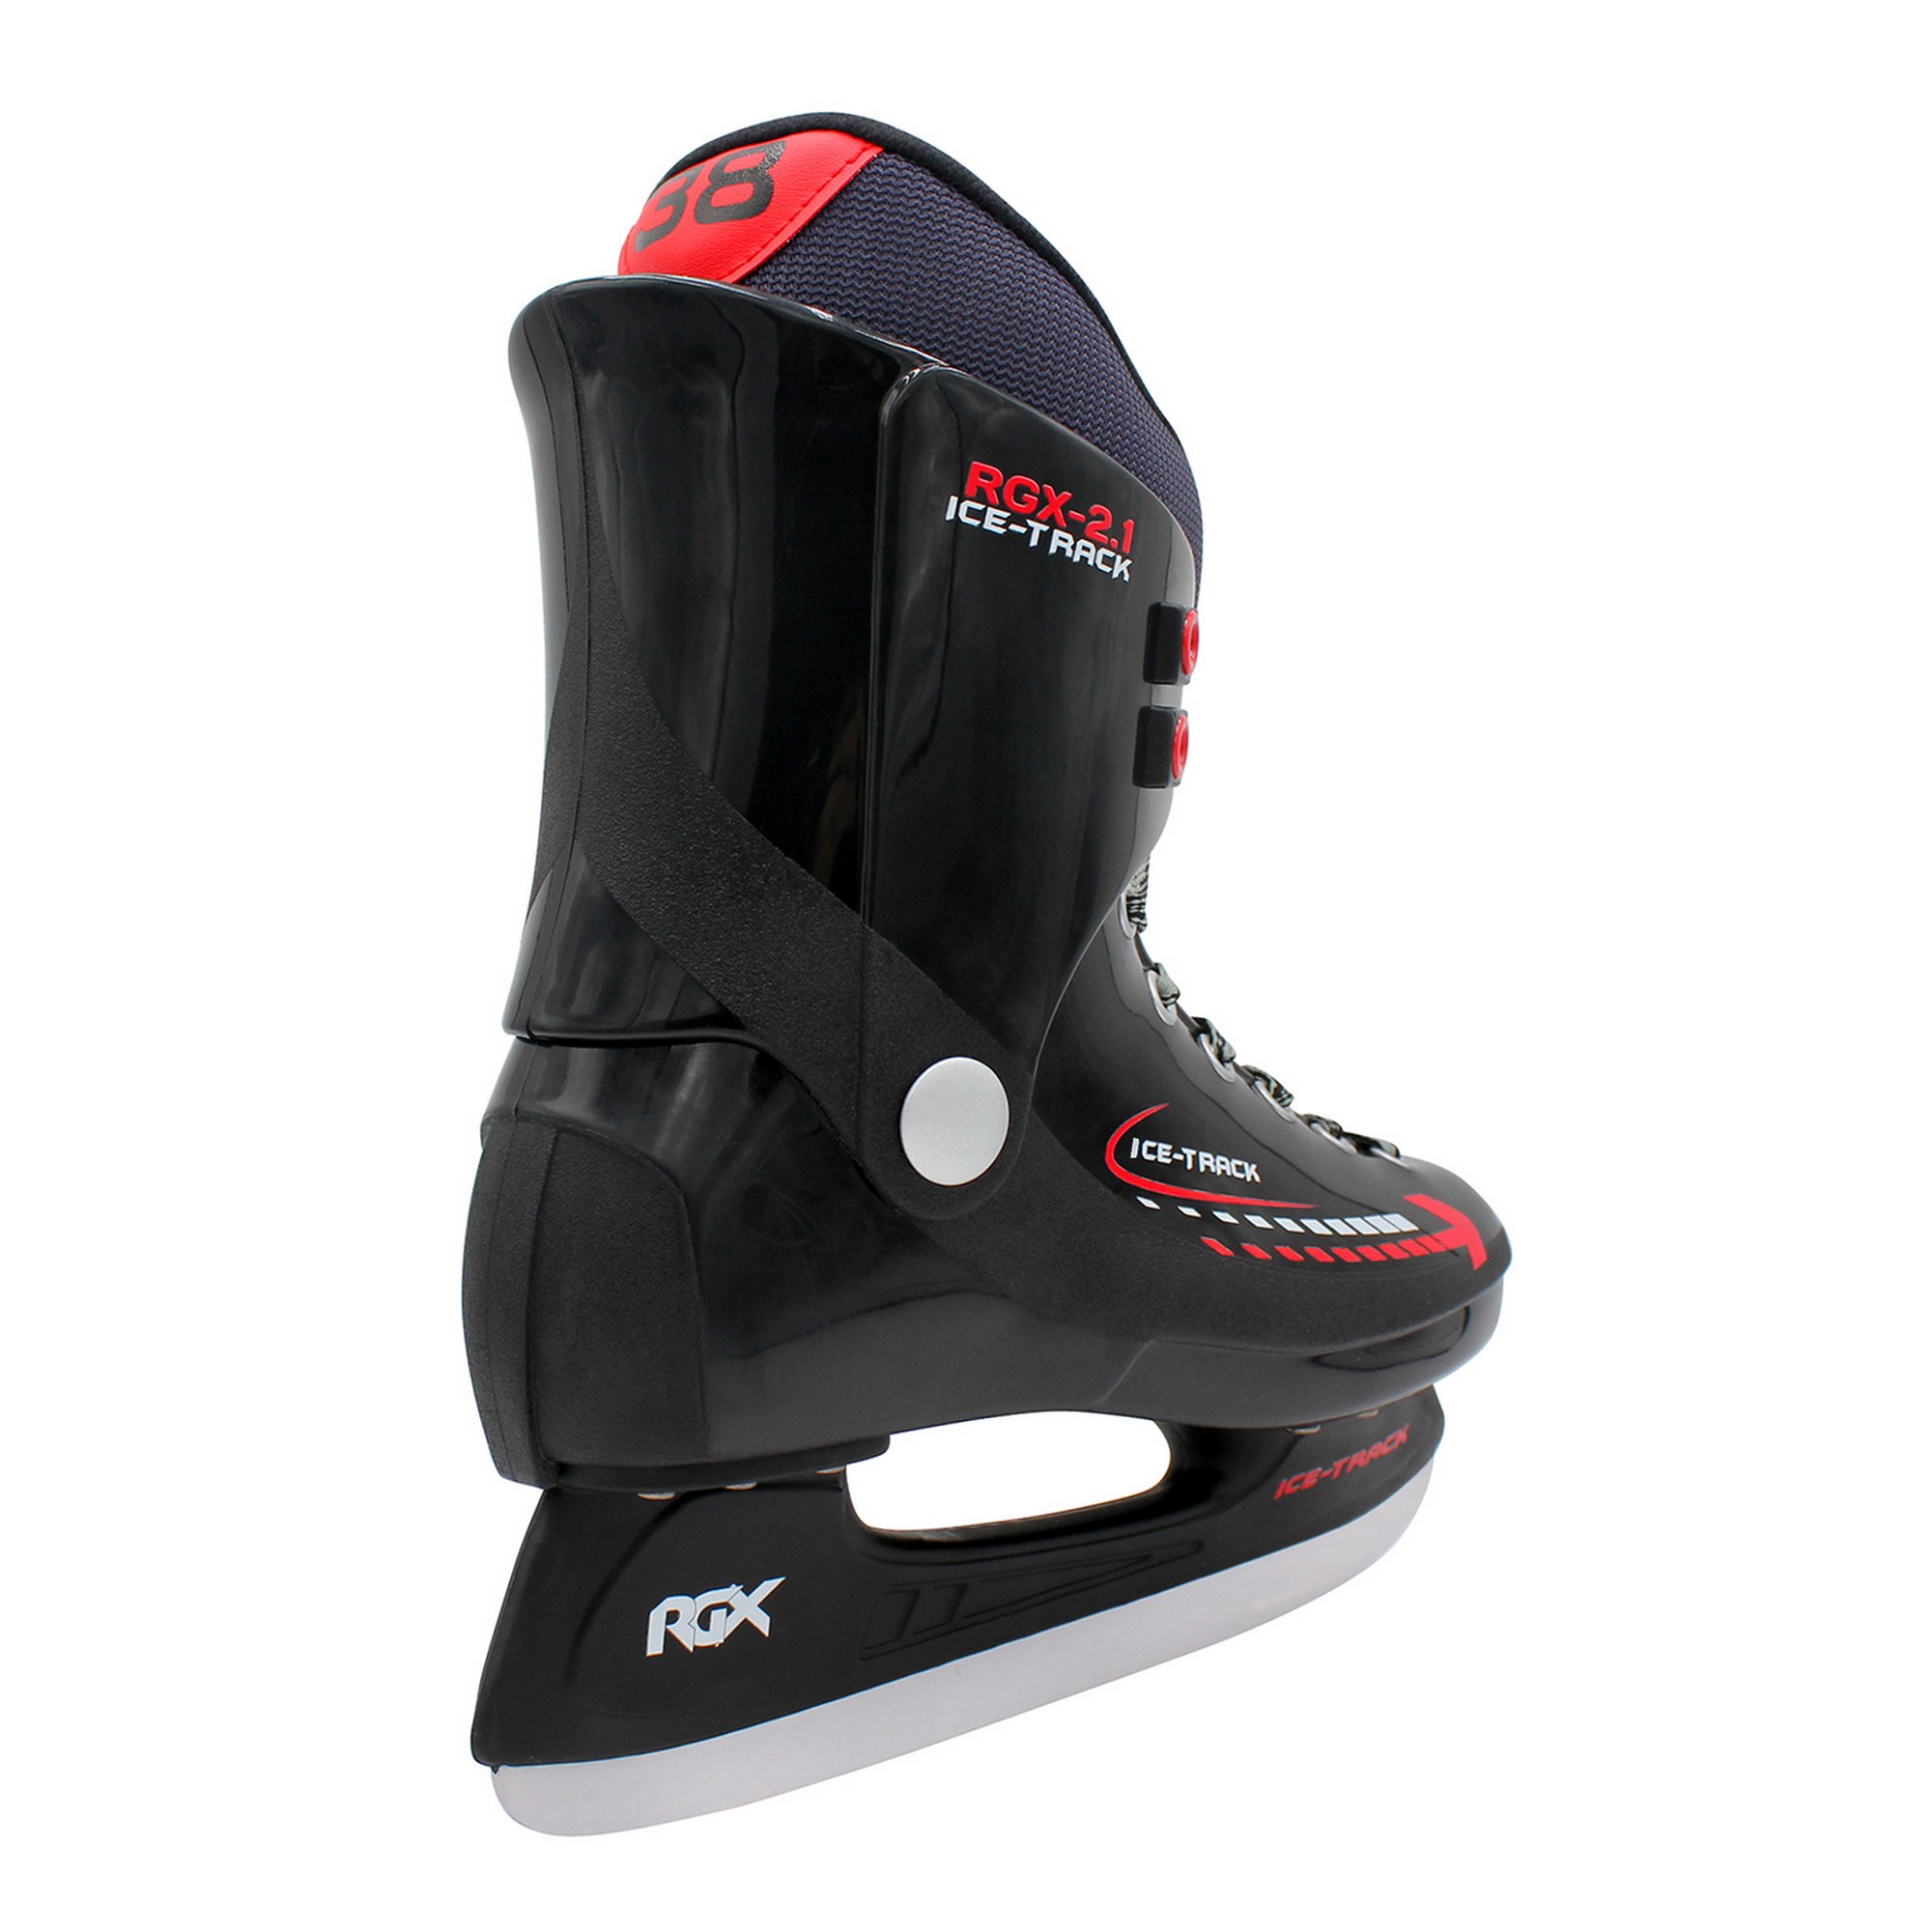 Хоккейные коньки RGX Leader (для проката) RGX-2.1 ICE-Track 2000_2000